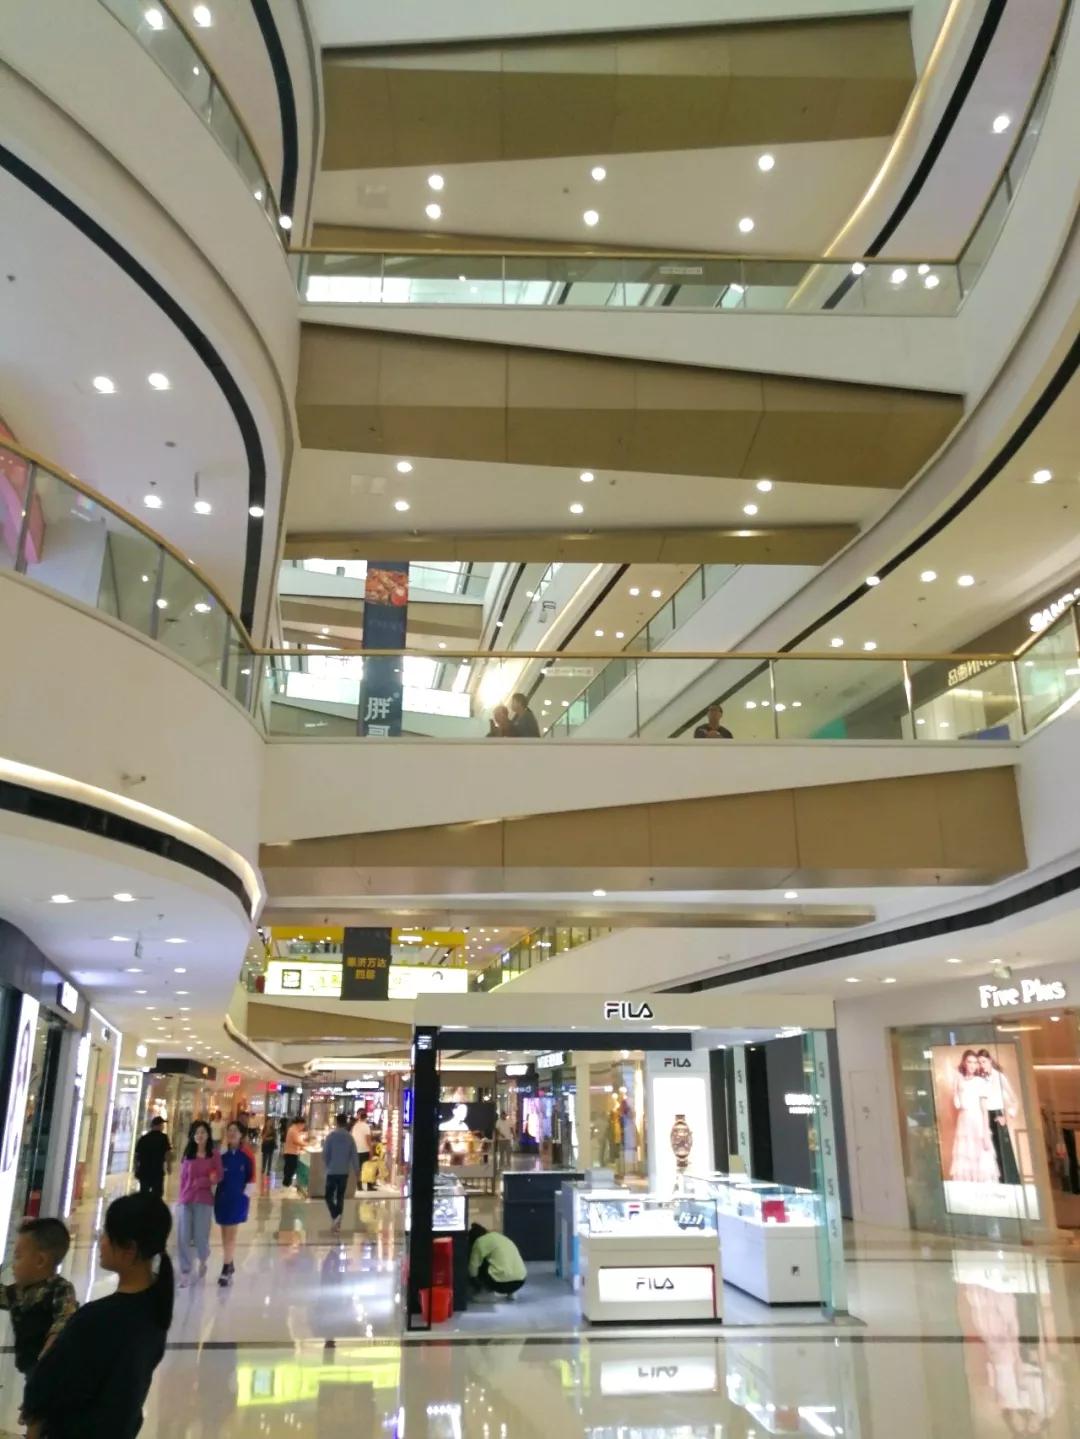 再添8万m05时尚购物中心,郑州北区惠济万达商圈迎来新格局